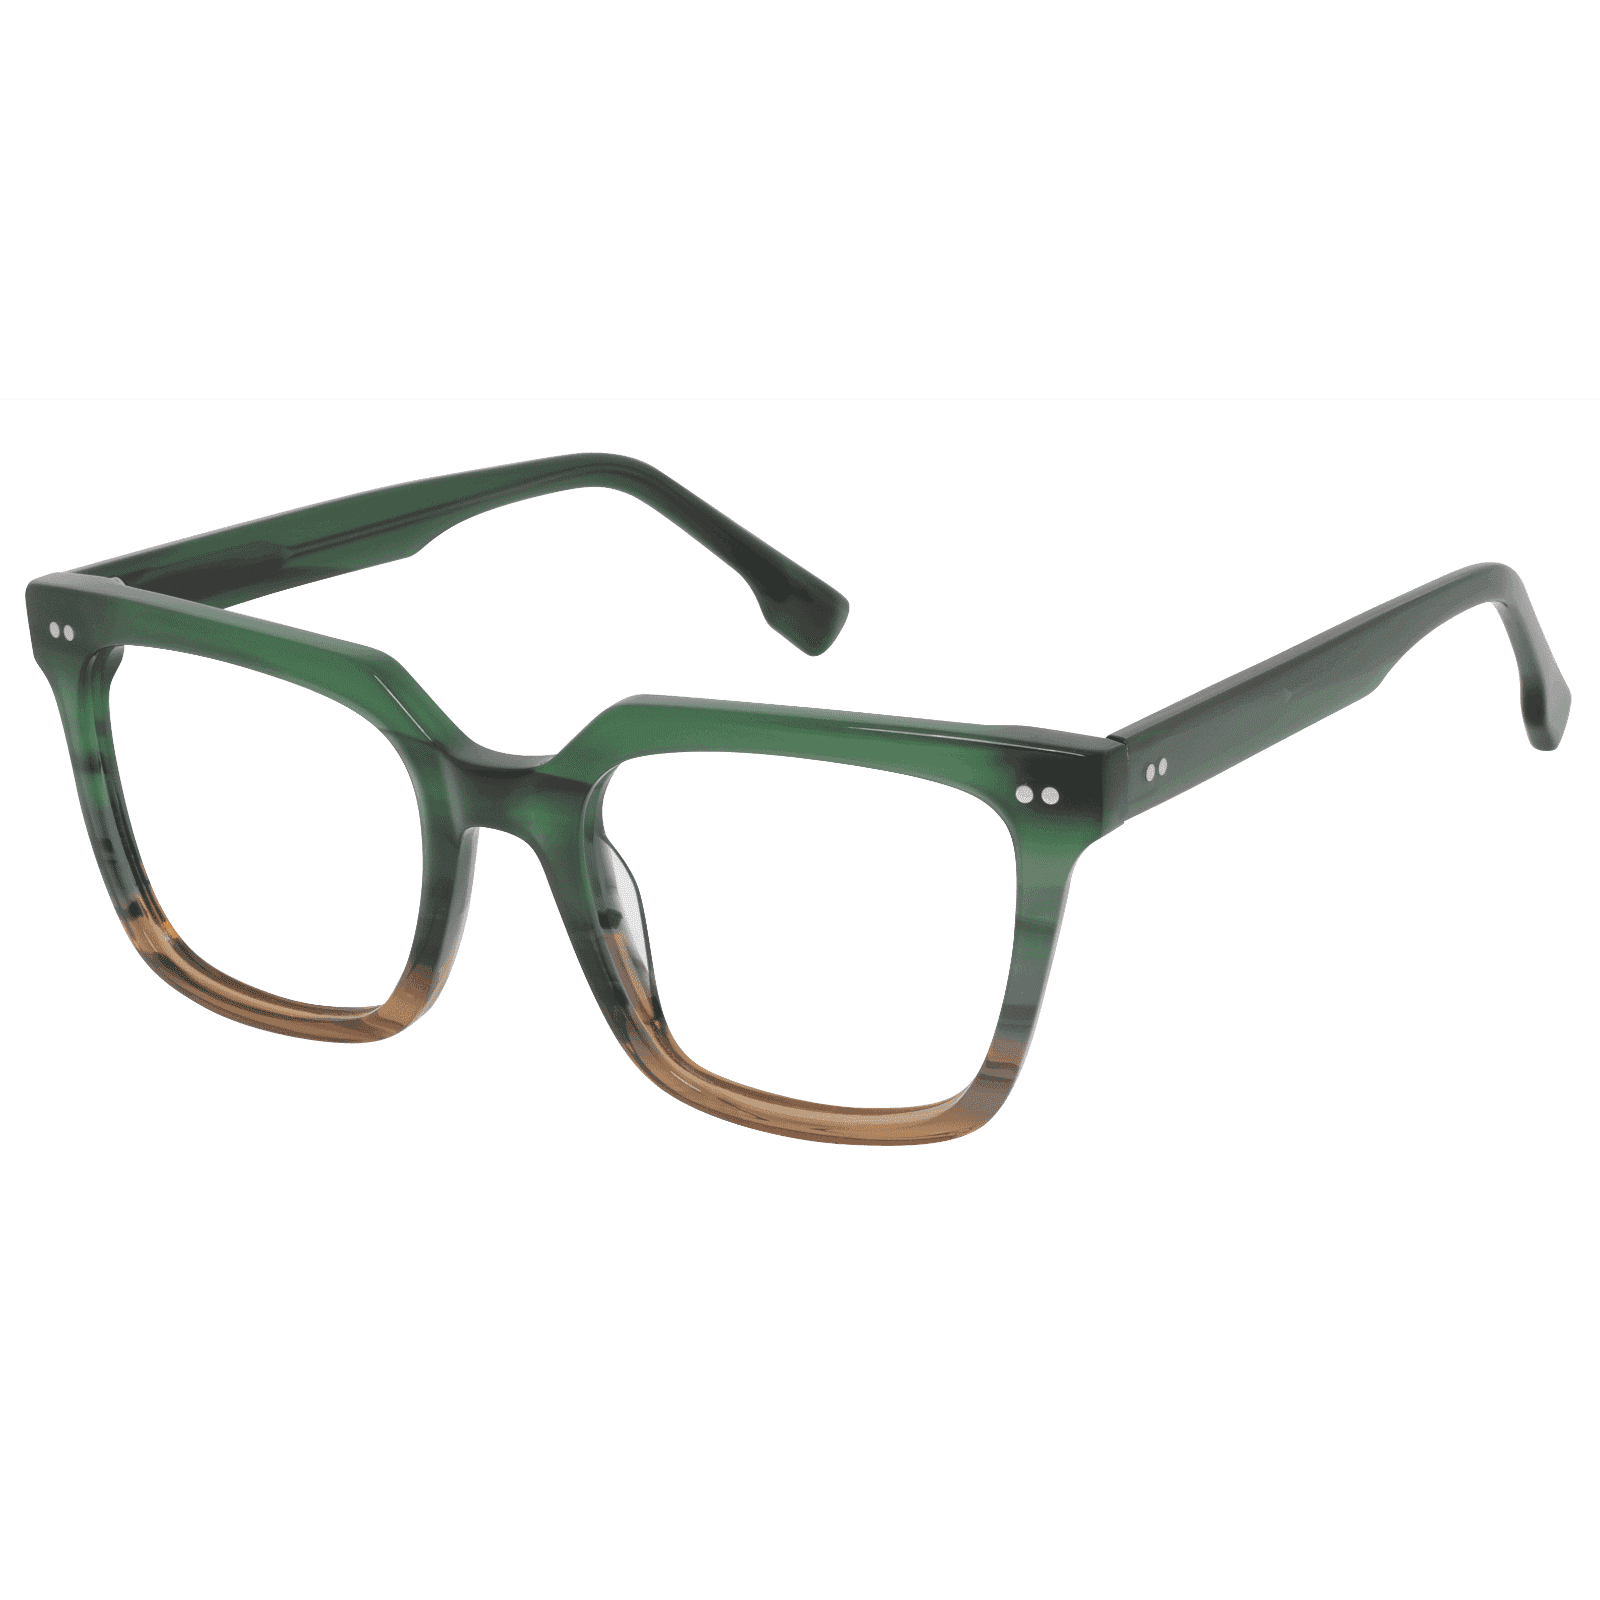 Onirii - Square Green Reading Glasses for Men & Women